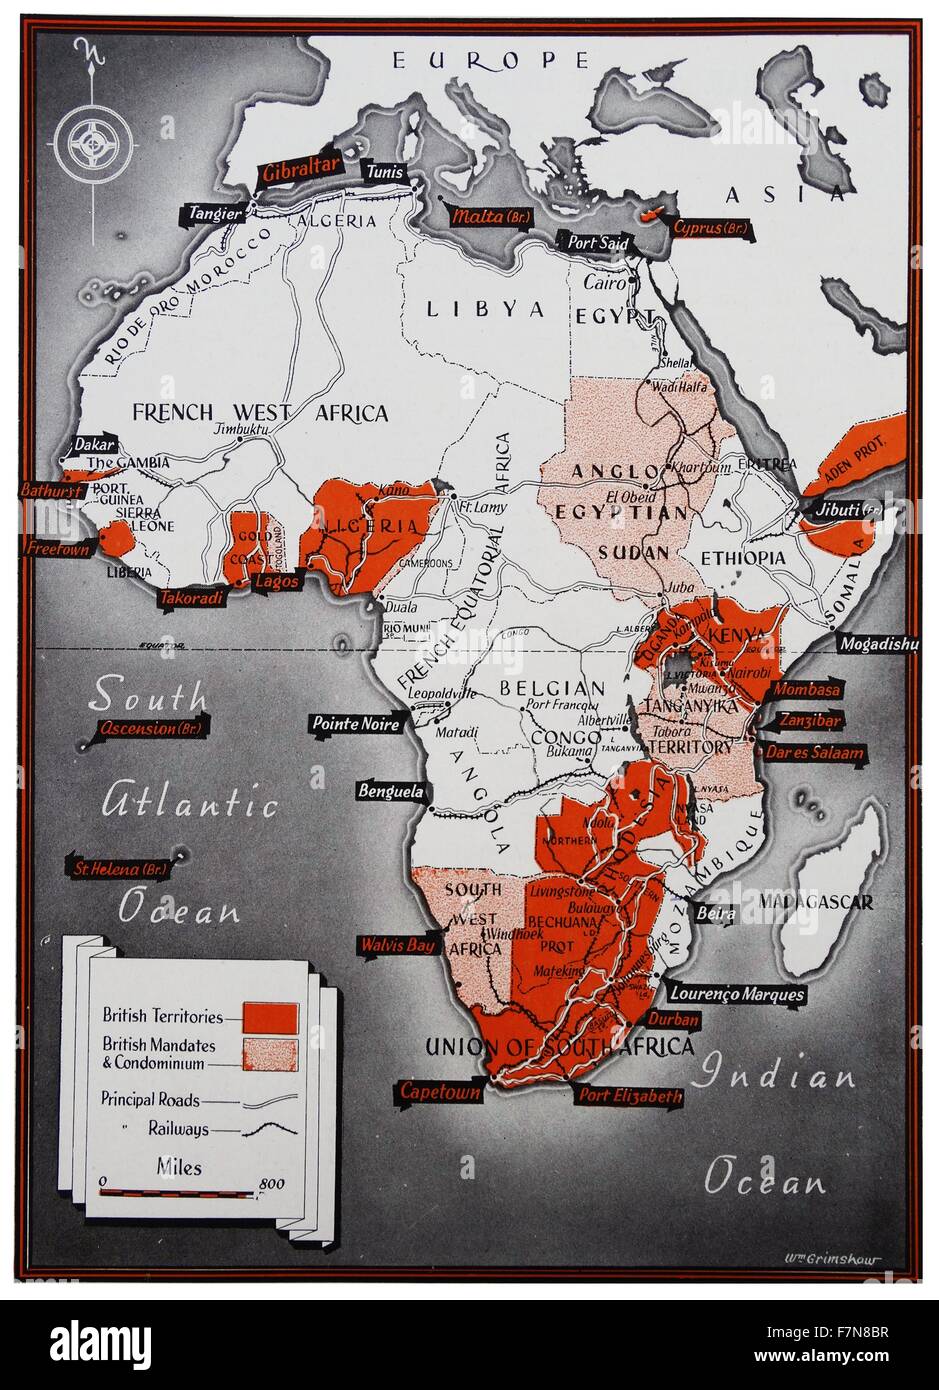 Mappa di Africa con un colore chiave che identifica i territori britannici. Datata 1900 Foto Stock